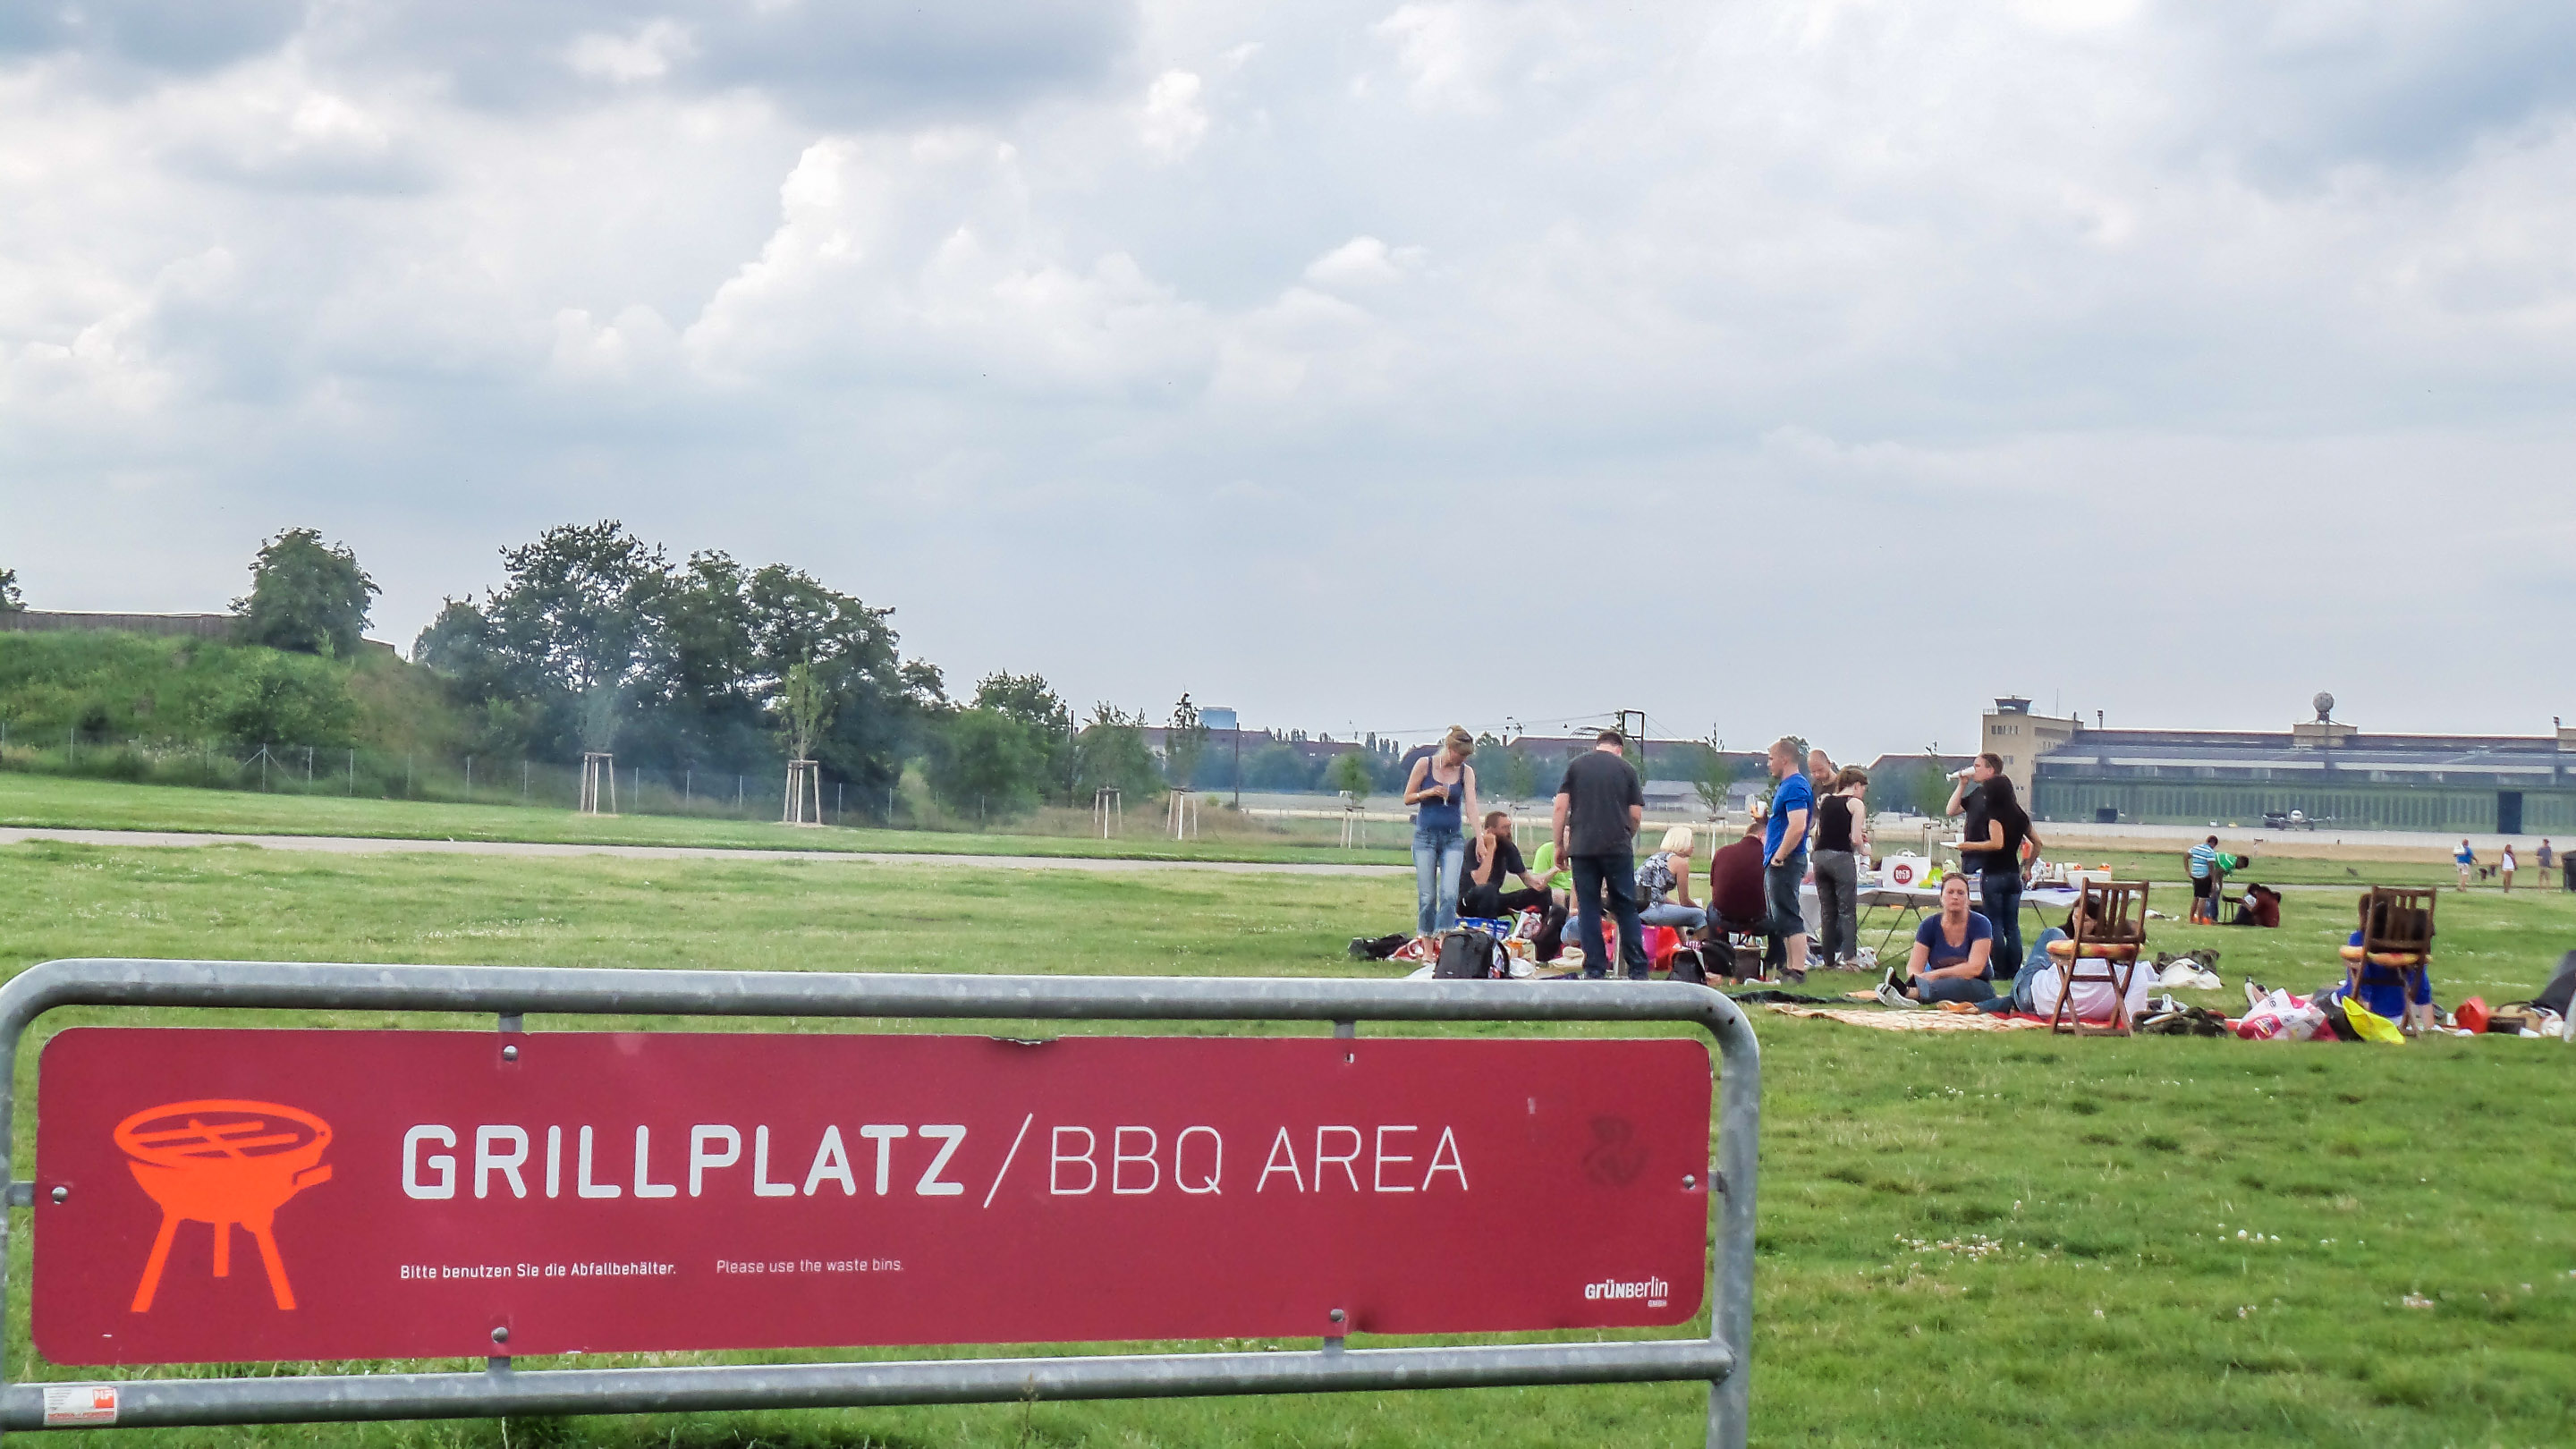 Berlin Tempelhof Park